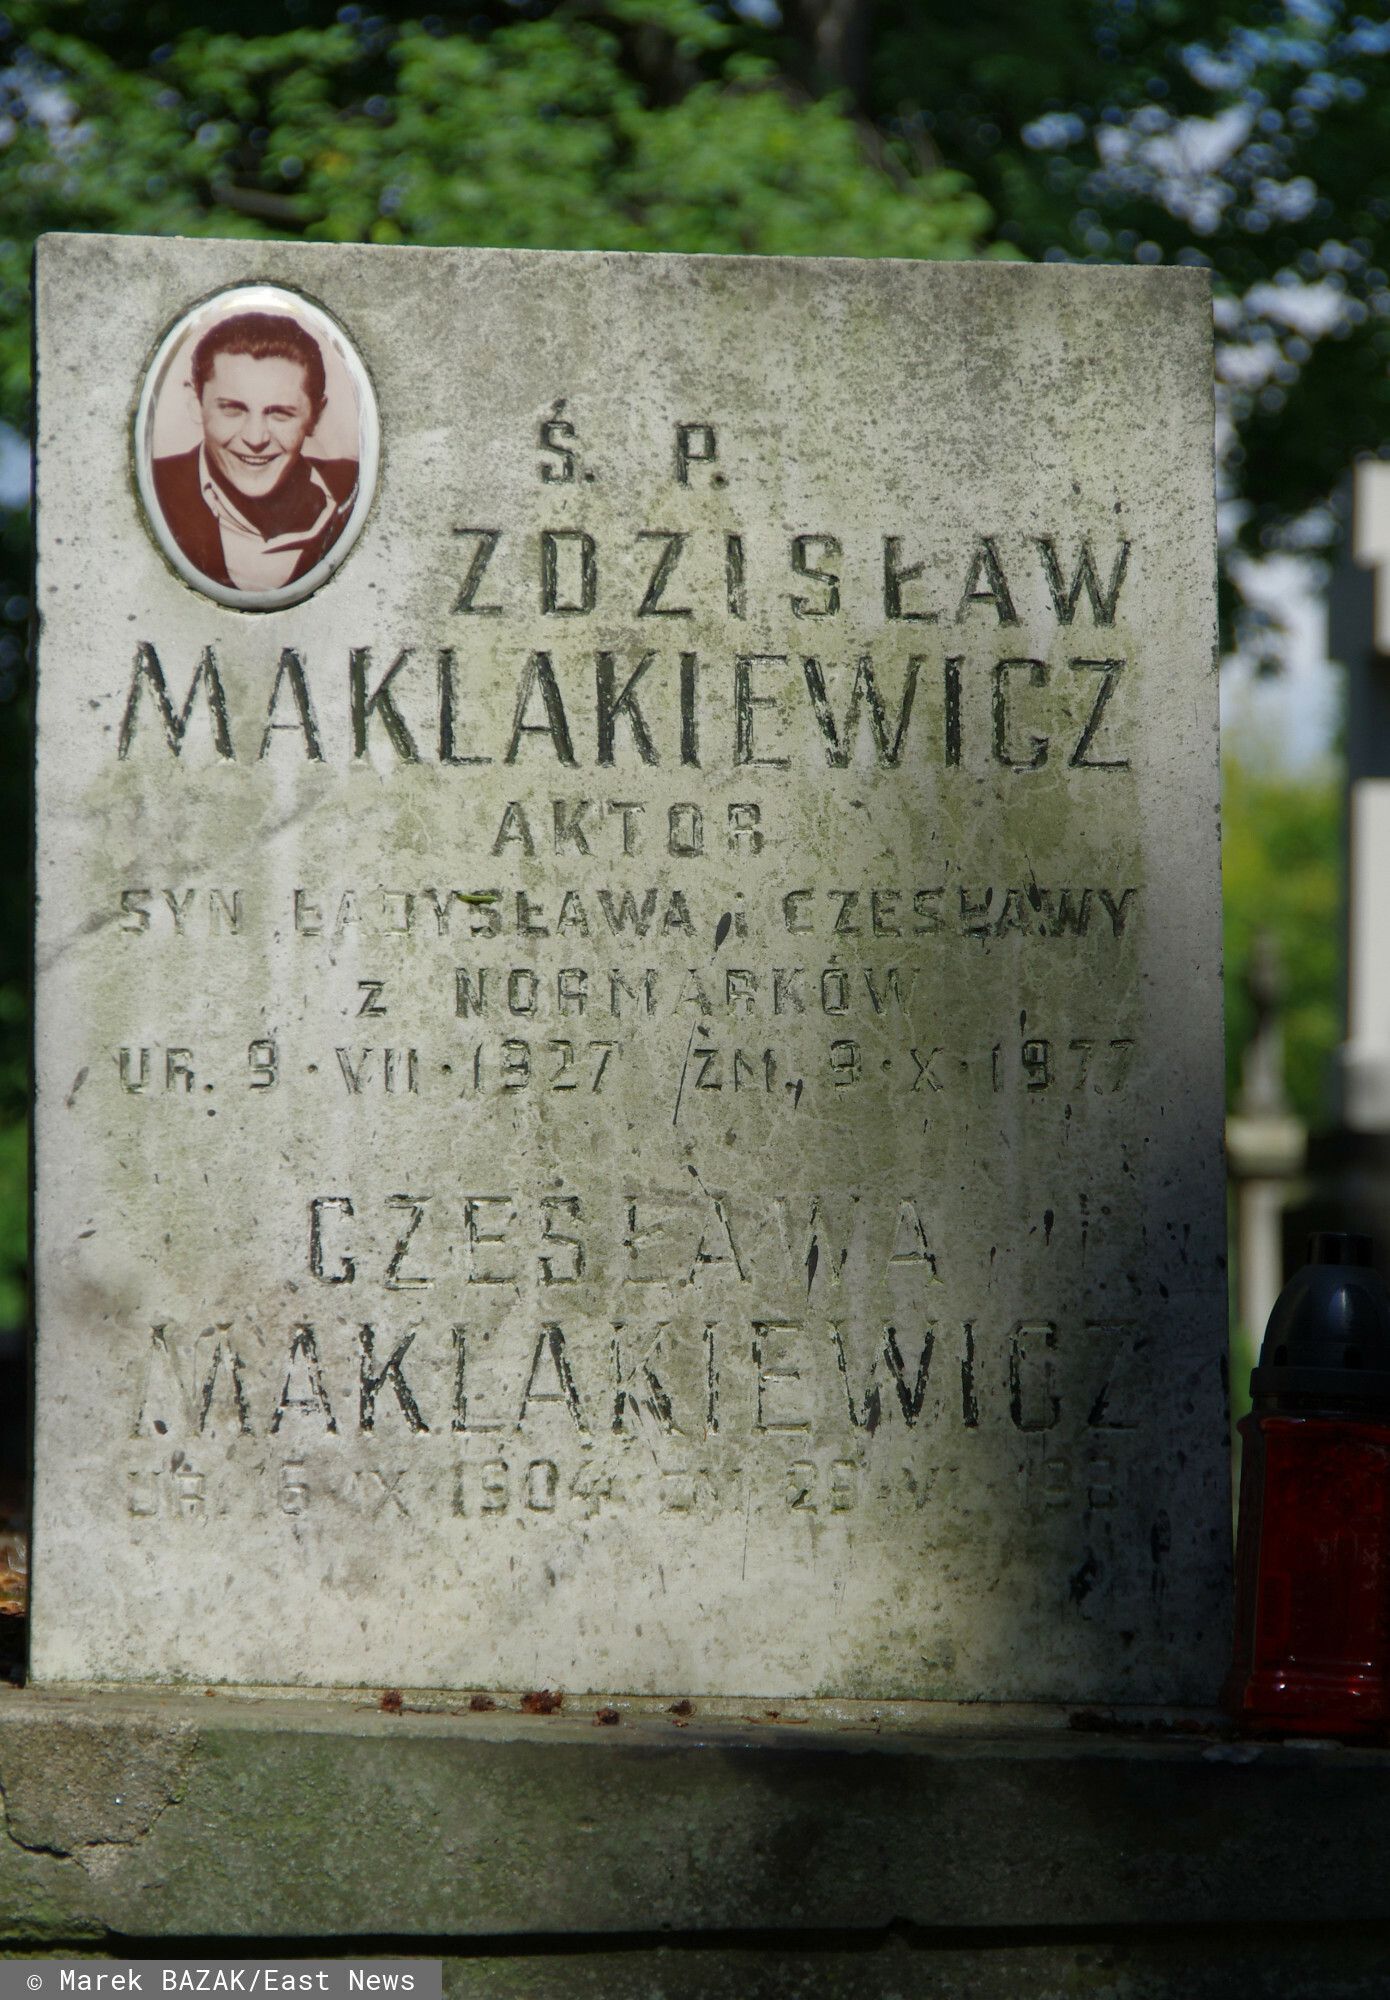 grób Zdzisława Maklakiewicza.jpg